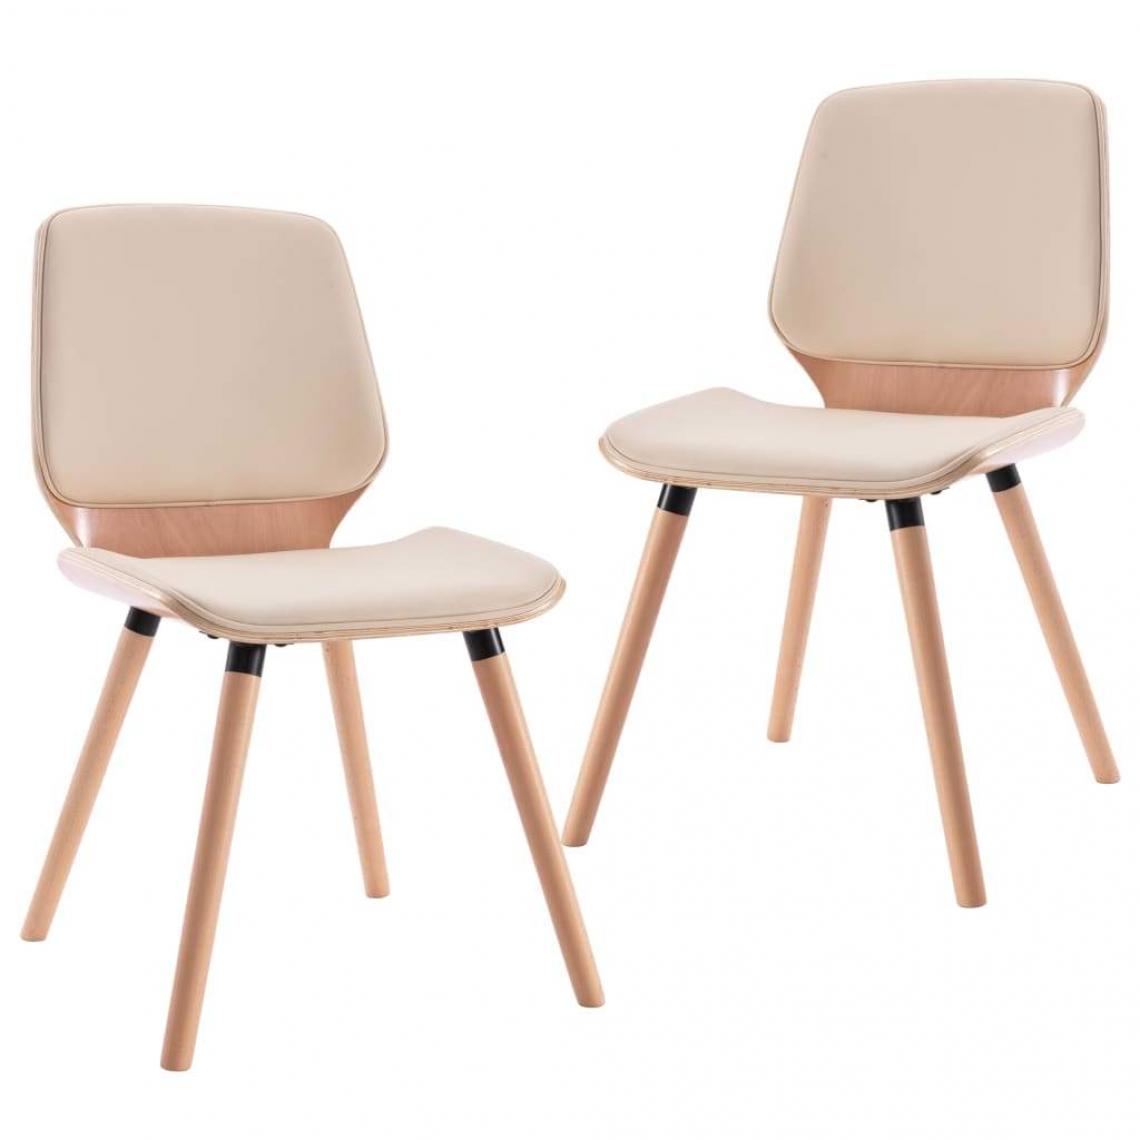 Decoshop26 - Lot de 2 chaises de salle à manger cuisine design contemporain similicuir crème CDS020421 - Chaises